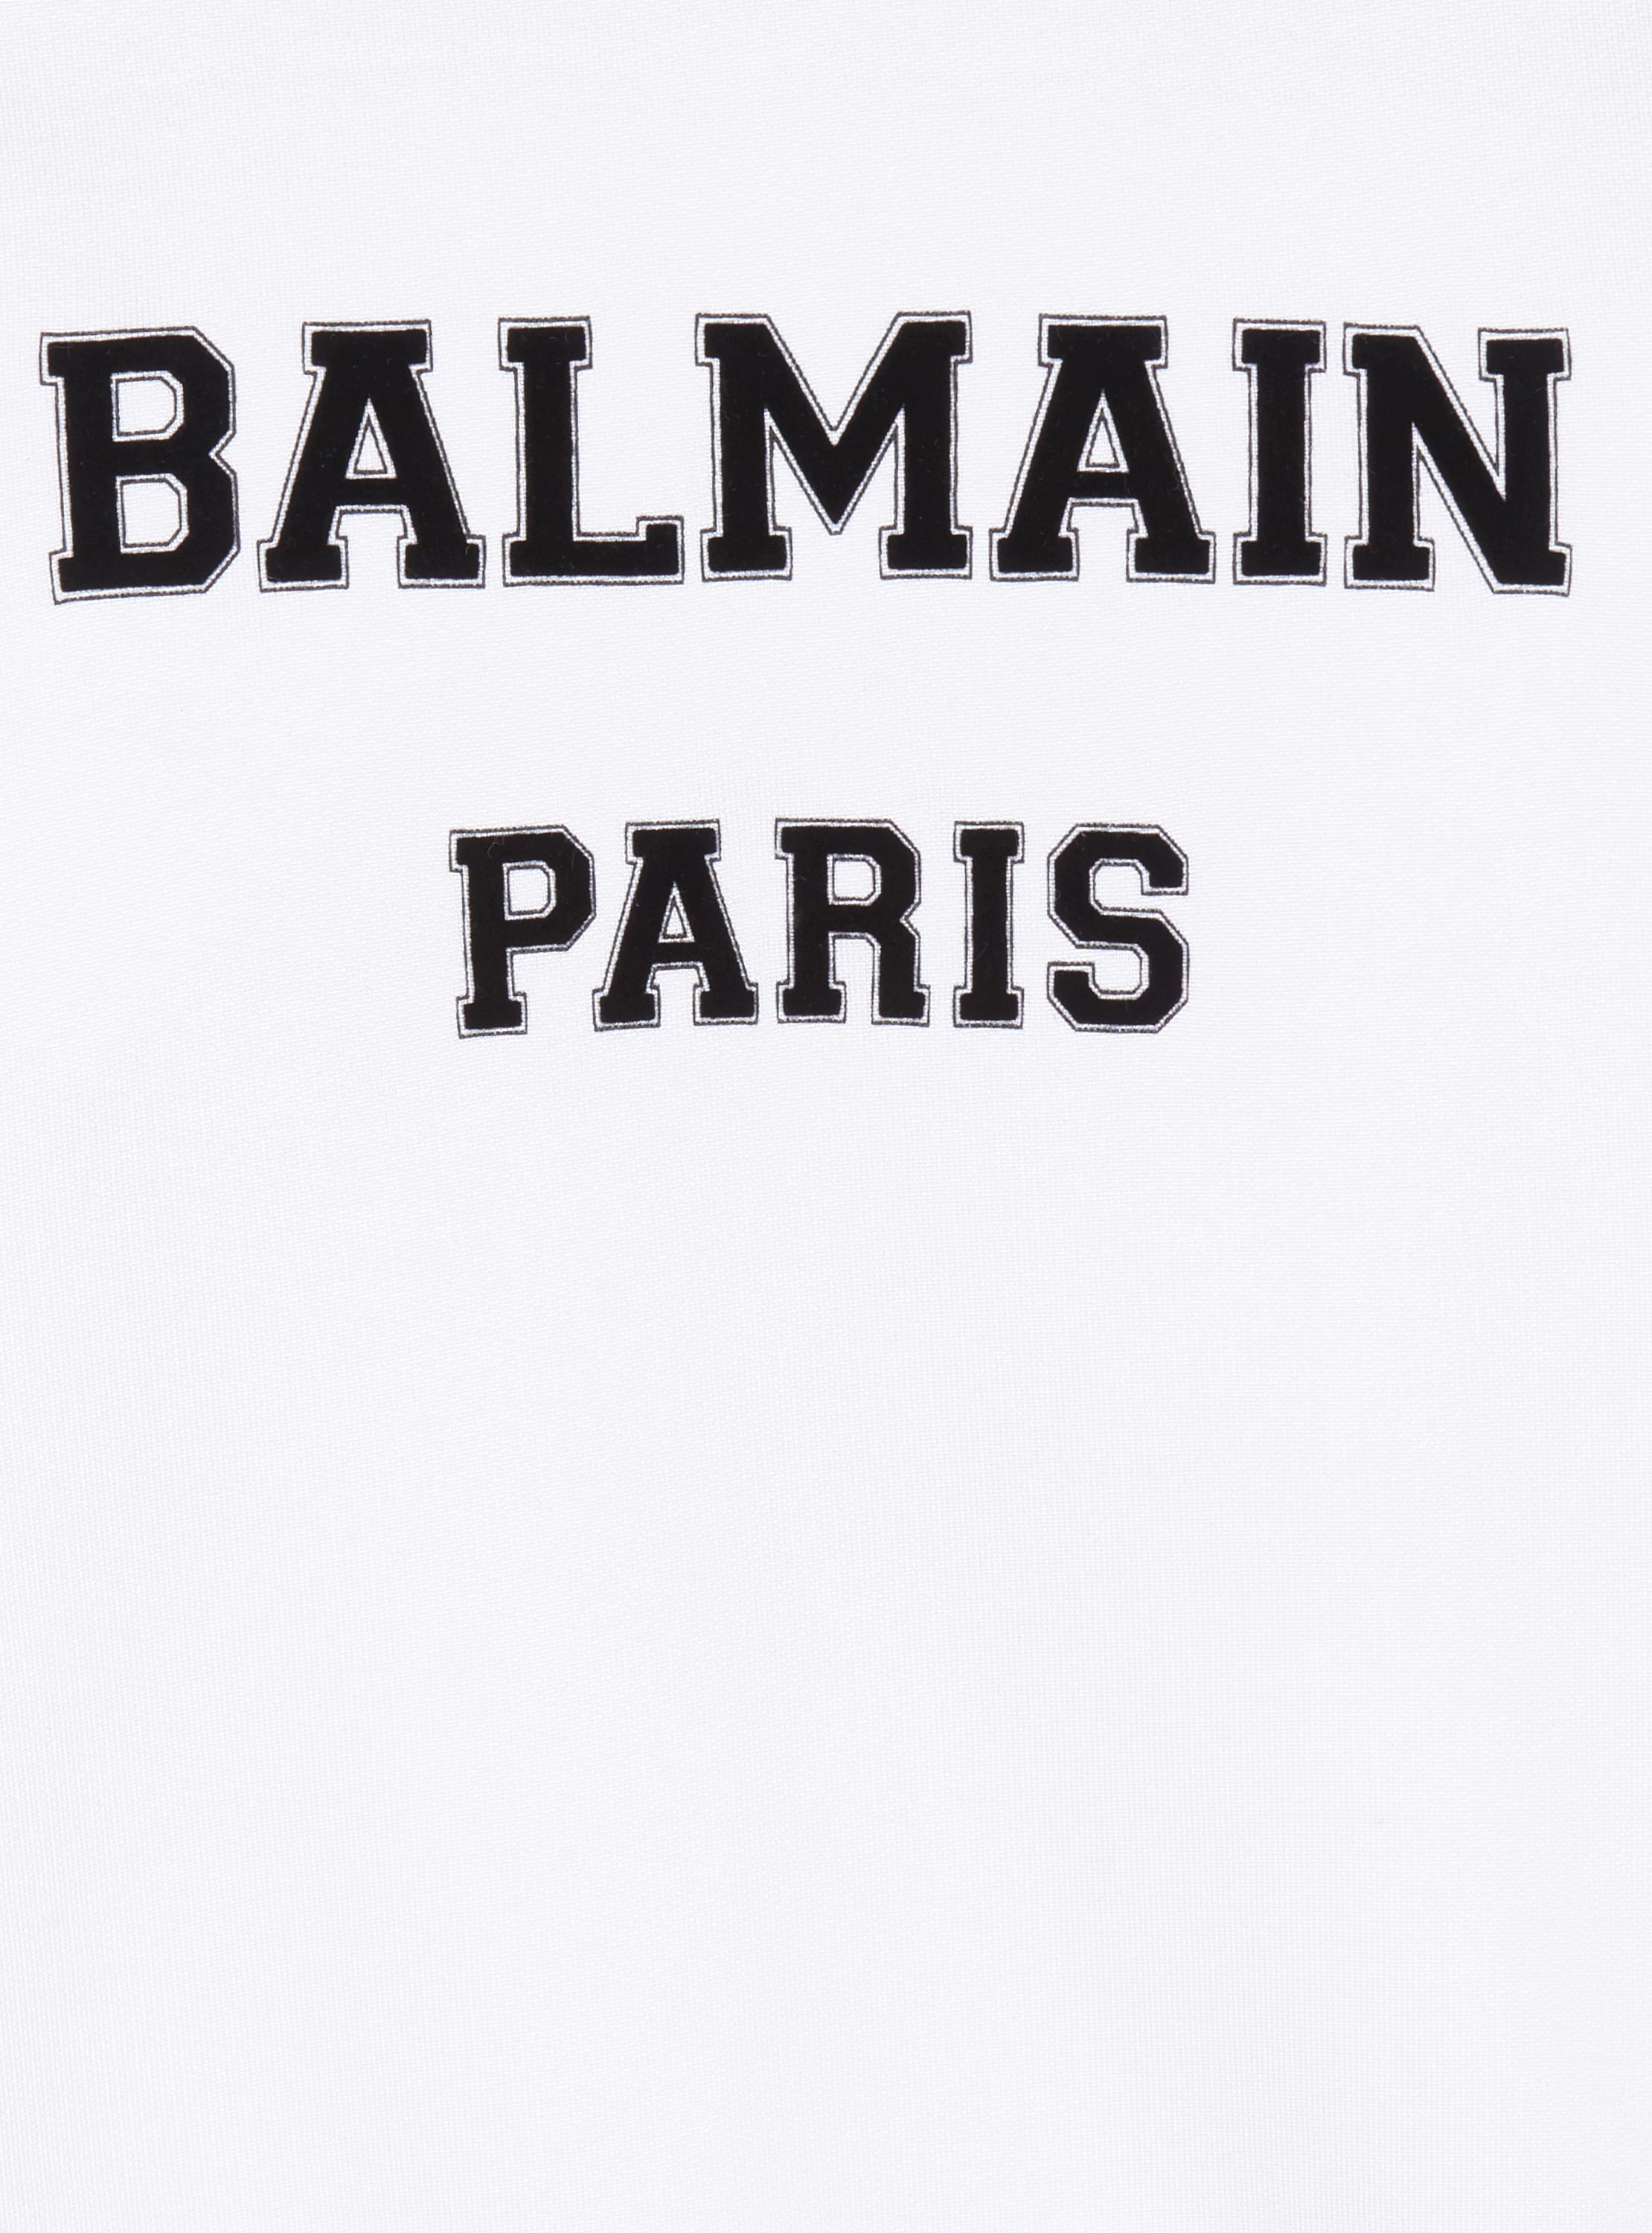 Balmain Paris 스웨트셔츠